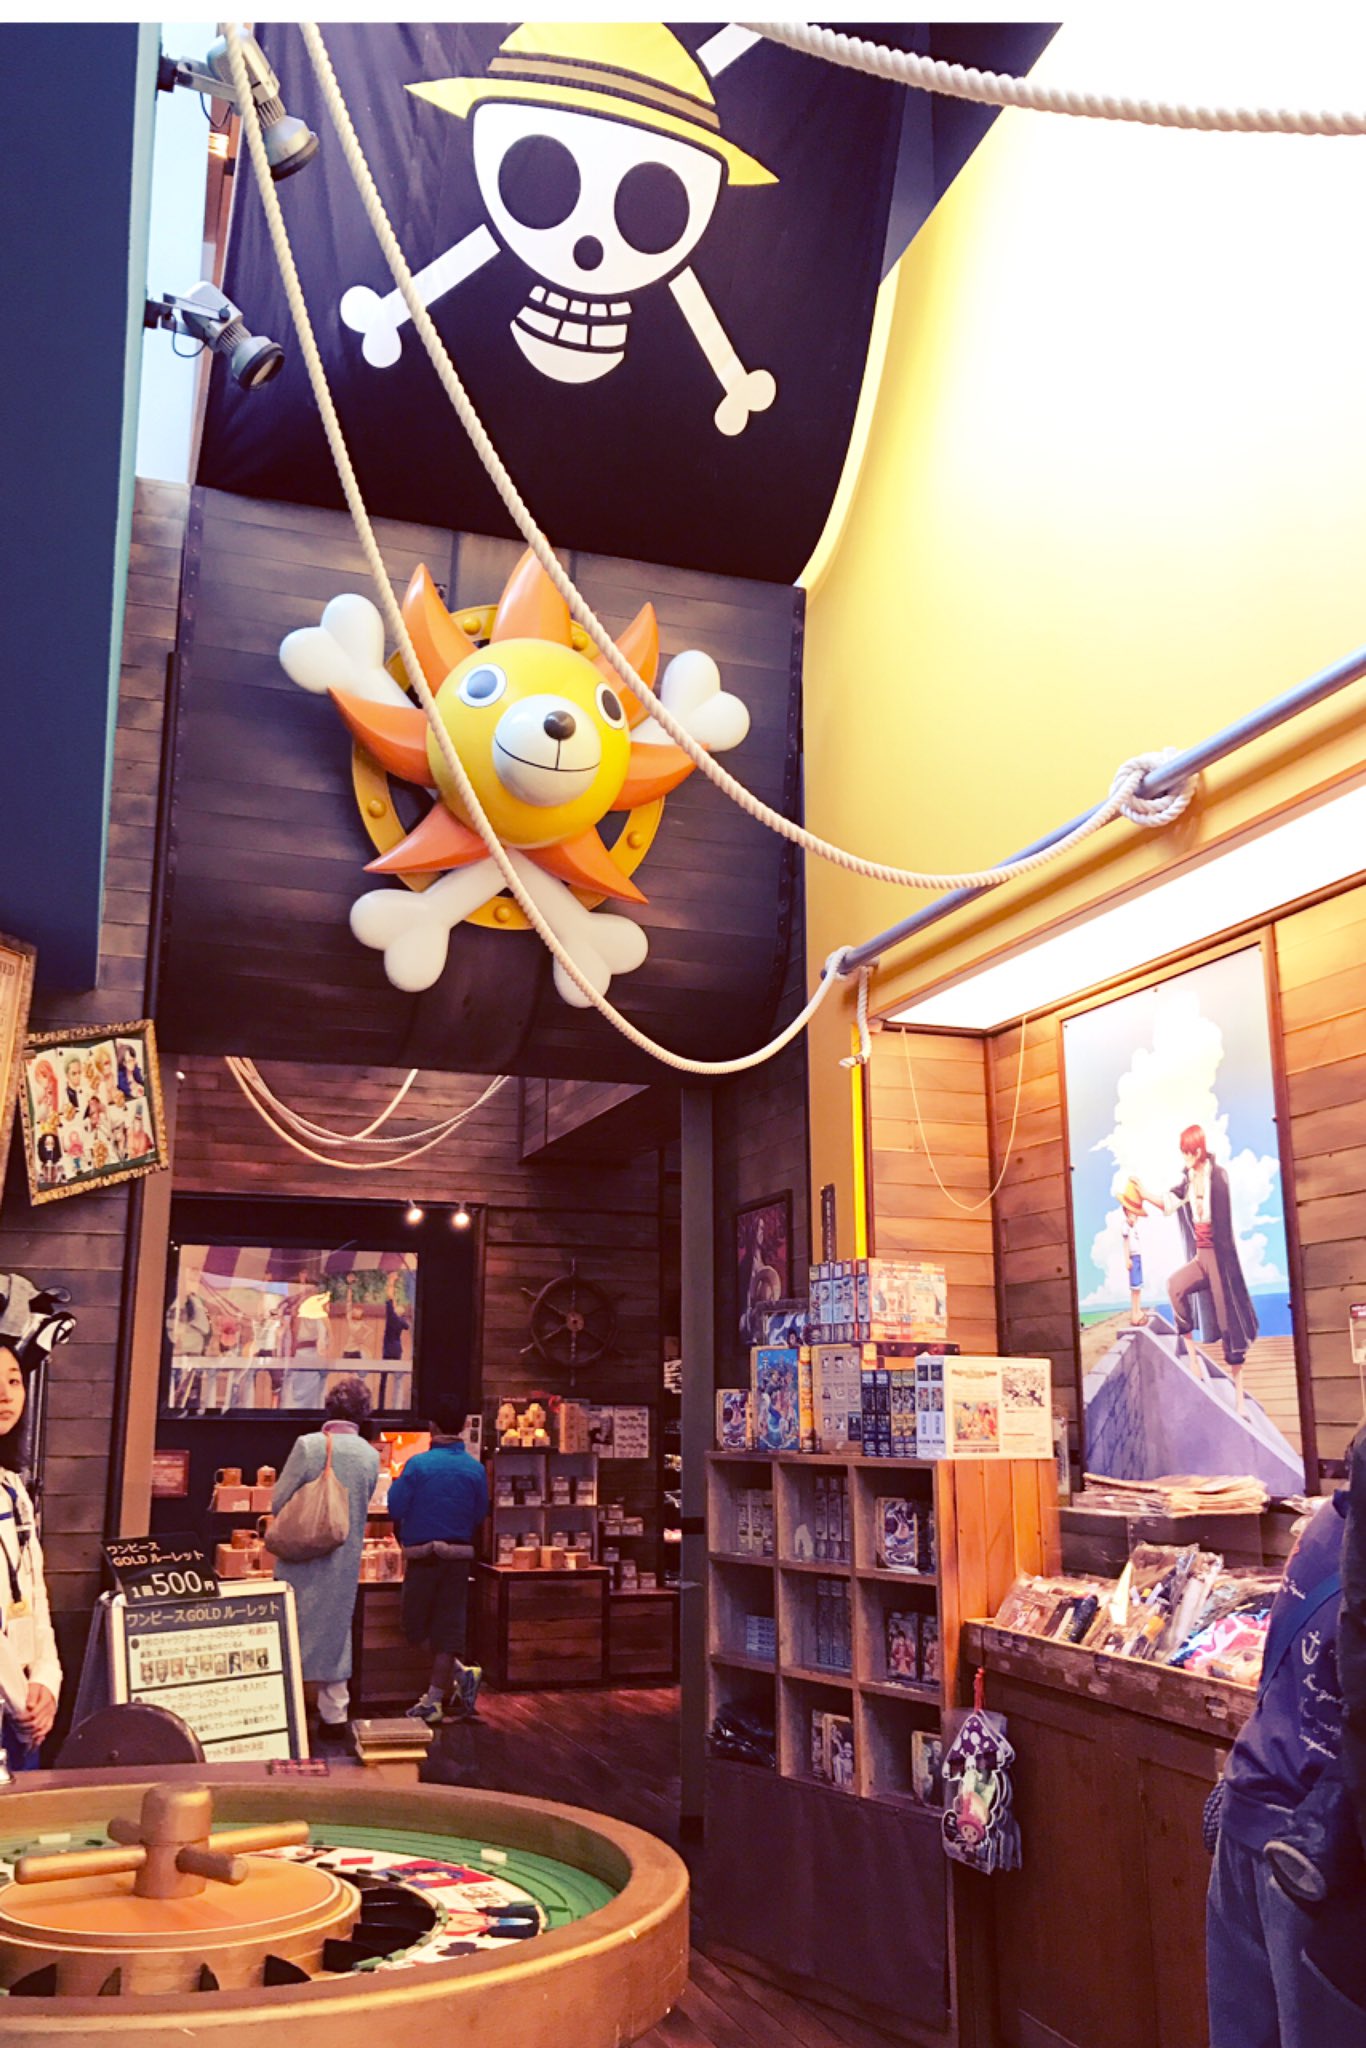 フジテレビショップ フジさん A Twitter 大人気 One Pieceコーナーではたくさんのグッズを取り揃えておりますッ ワンピース の世界感をイメージした店内にワクワクしちゃいますよ 1回500円で素敵な景品がもらえるgoldルーレットもやっているのでぜひ遊びに来て